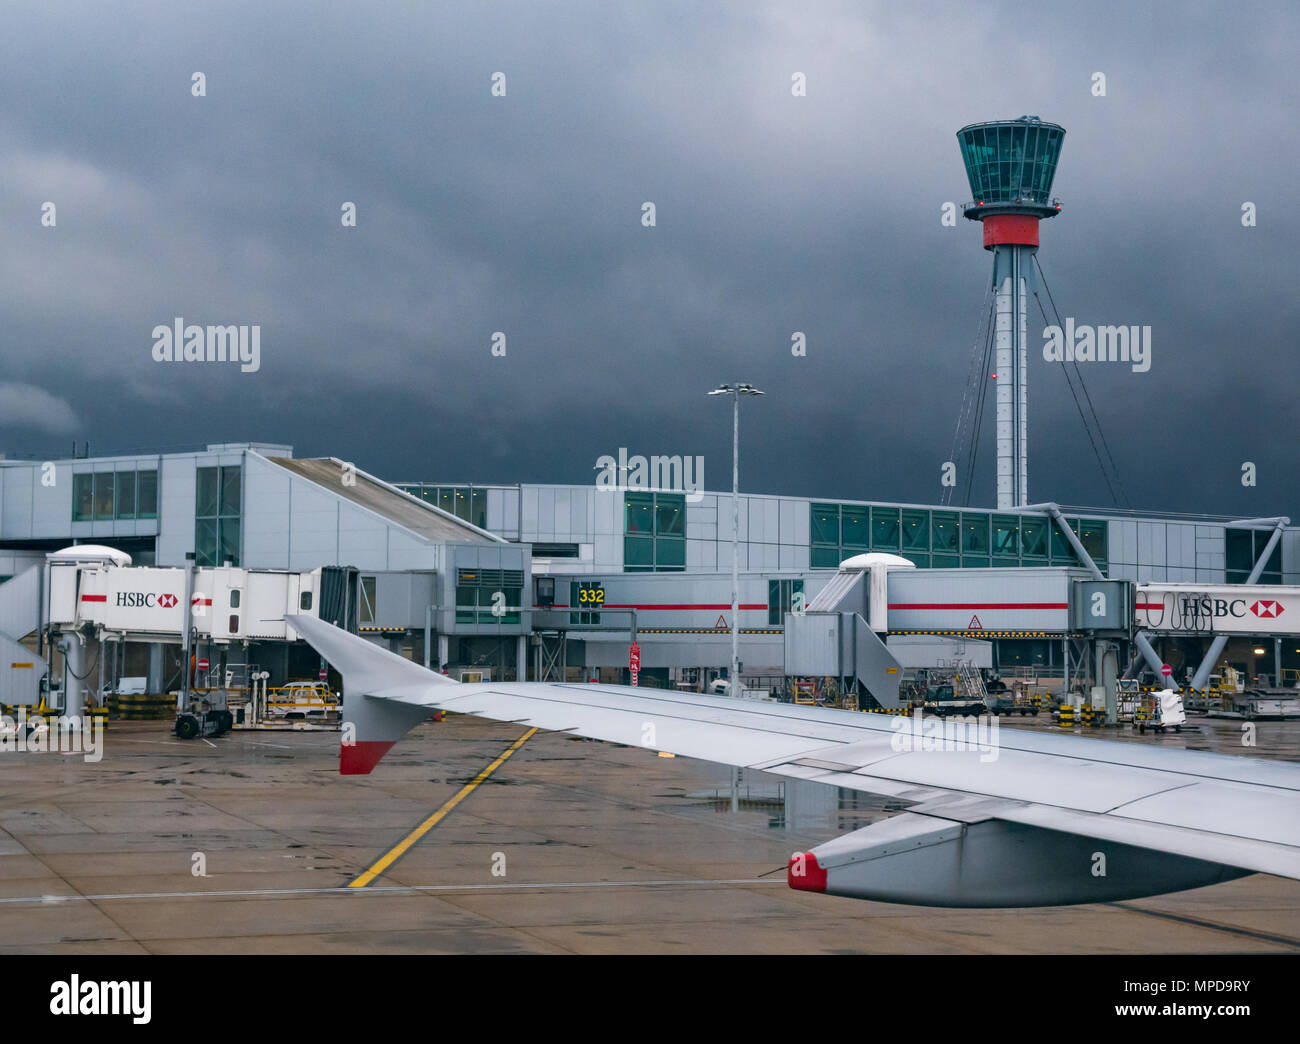 Sicht auf den Himmel Brücken, Terminal 5, Flughafen Heathrow, London, England, UK, aus dem Flugzeug Fenster übernommen, mit dem Flugzeug Tragfläche und control tower sichtbar. Stockfoto